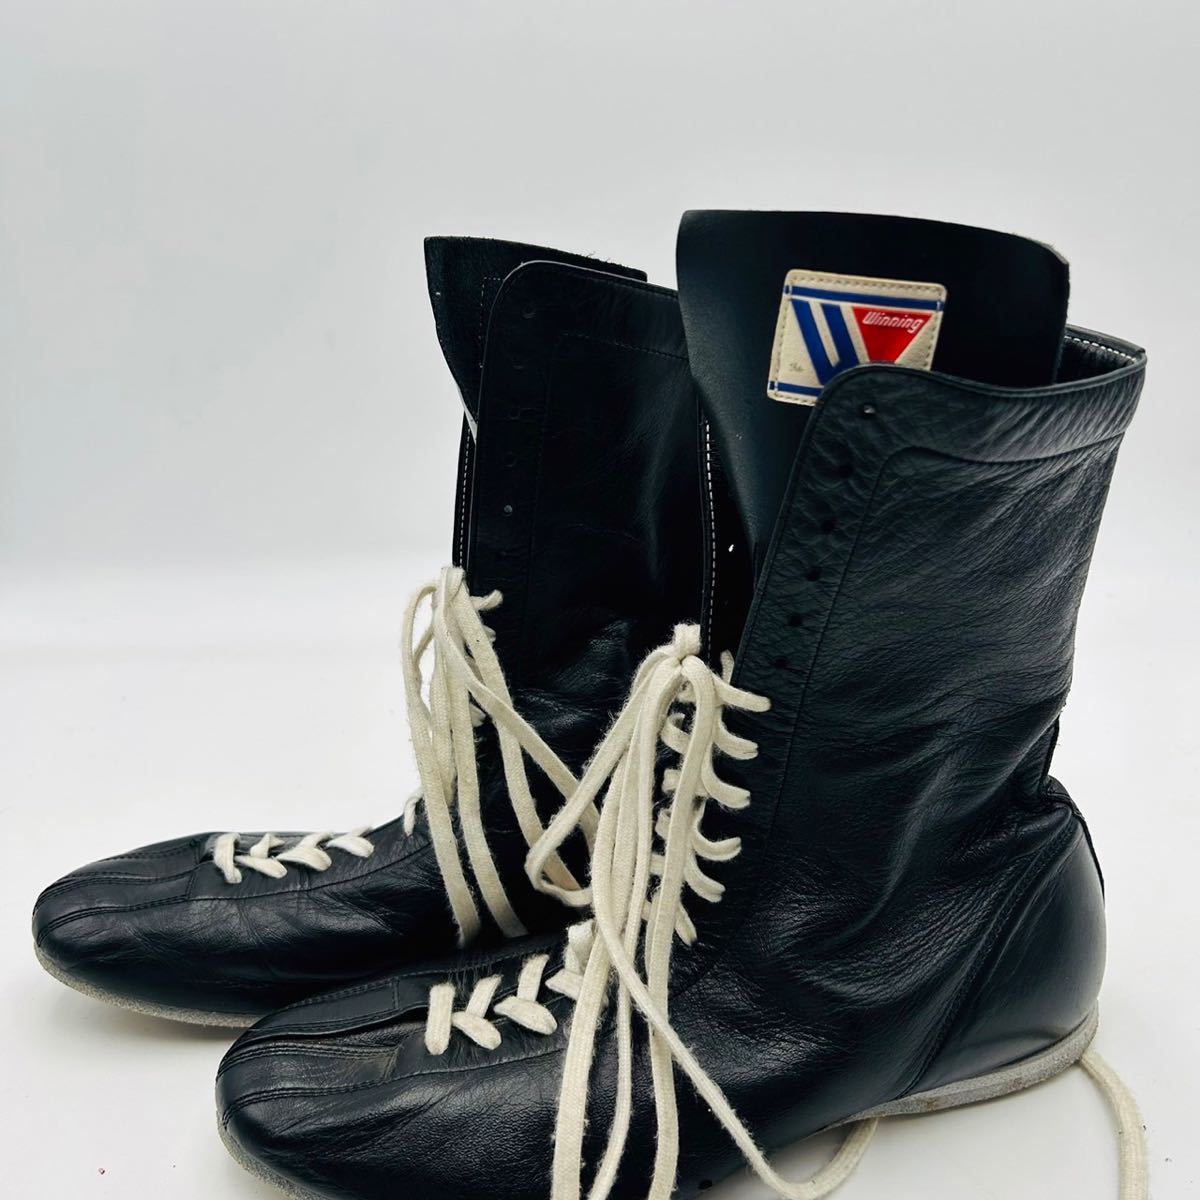 Winning Boxing Shoes SH-3300 ウイニング 本革製 ボクシングシューズ シューズ 黒 黒 ブラック 26cm 靴紐 白